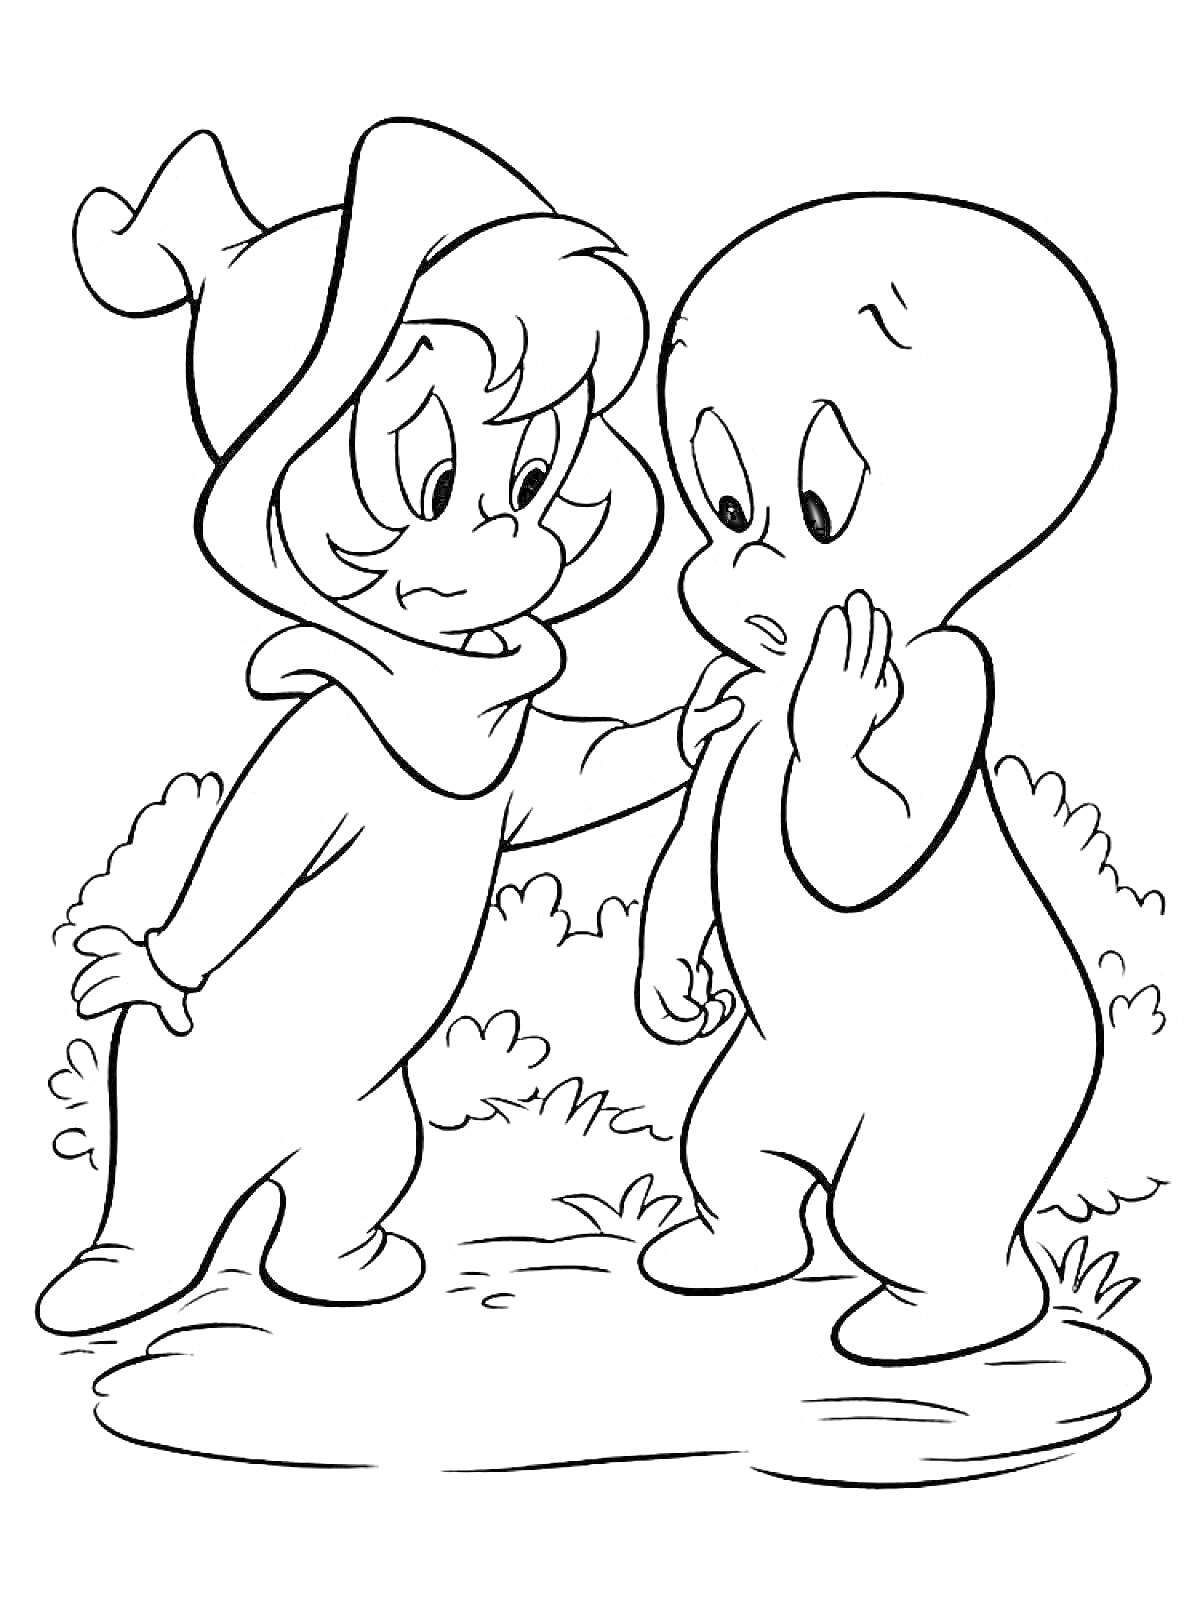 Два привидения в лесу, Каспер и его друг в капюшоне